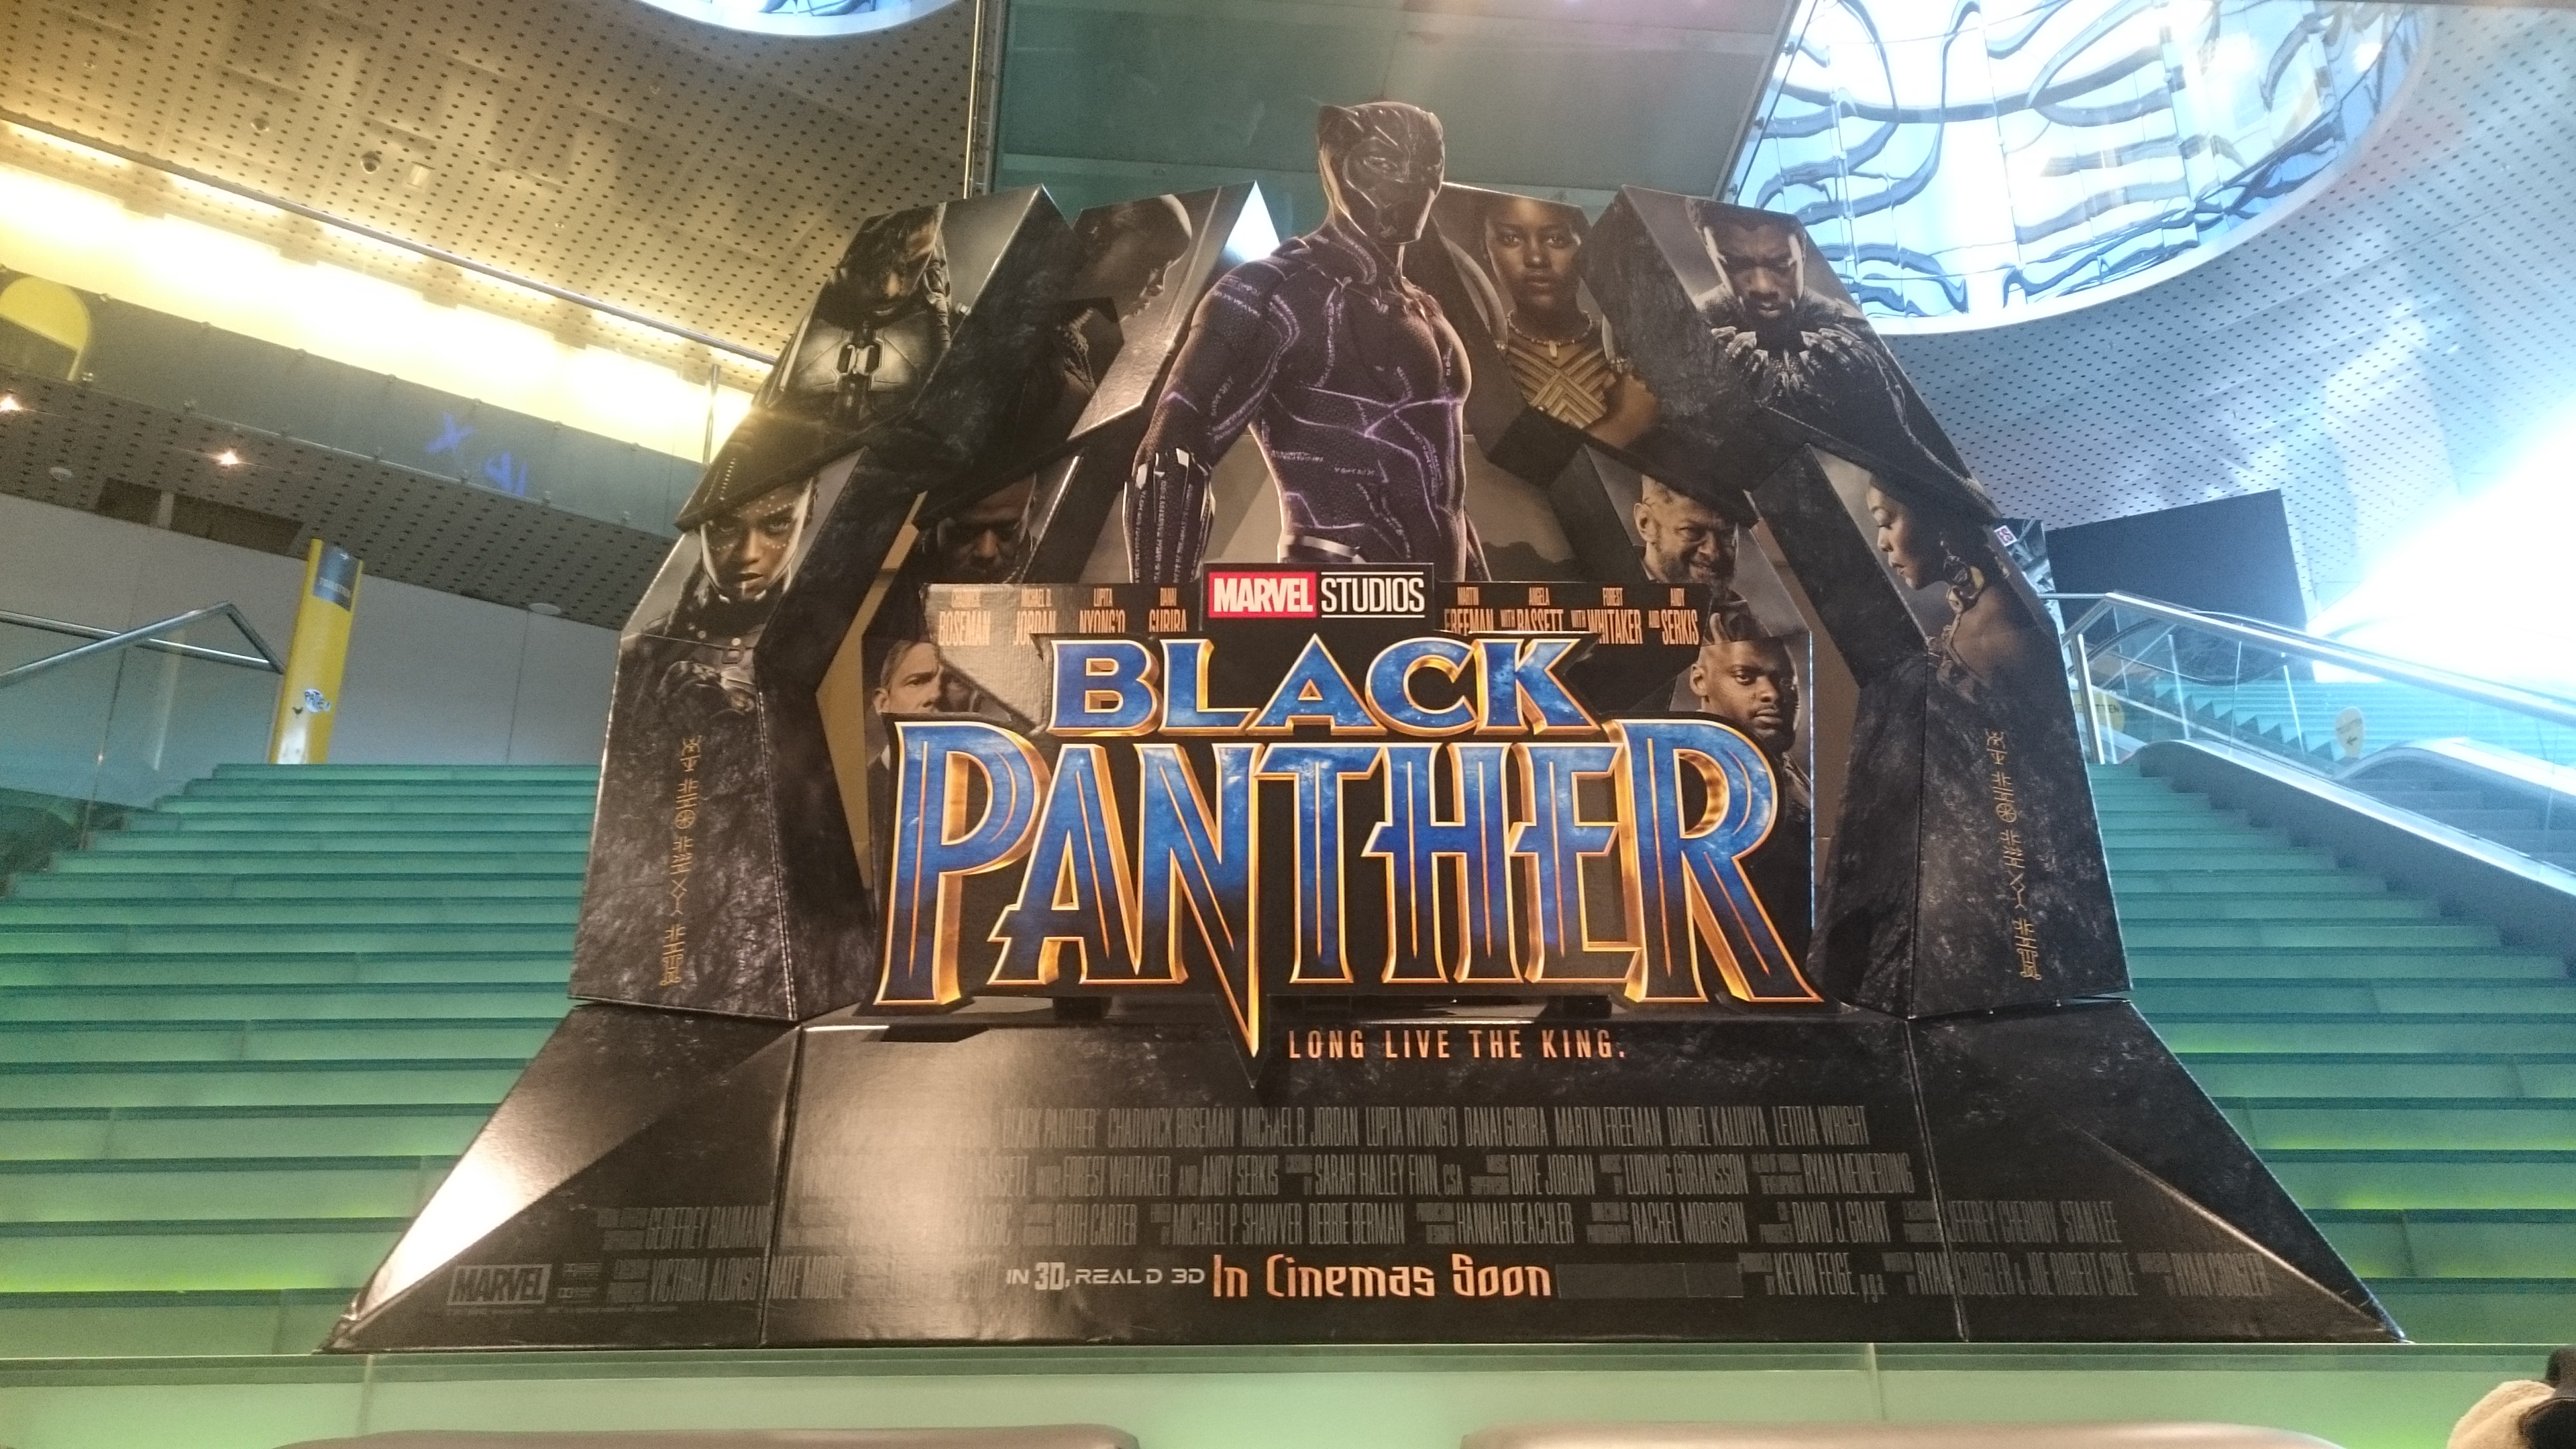 Black panther Marvel